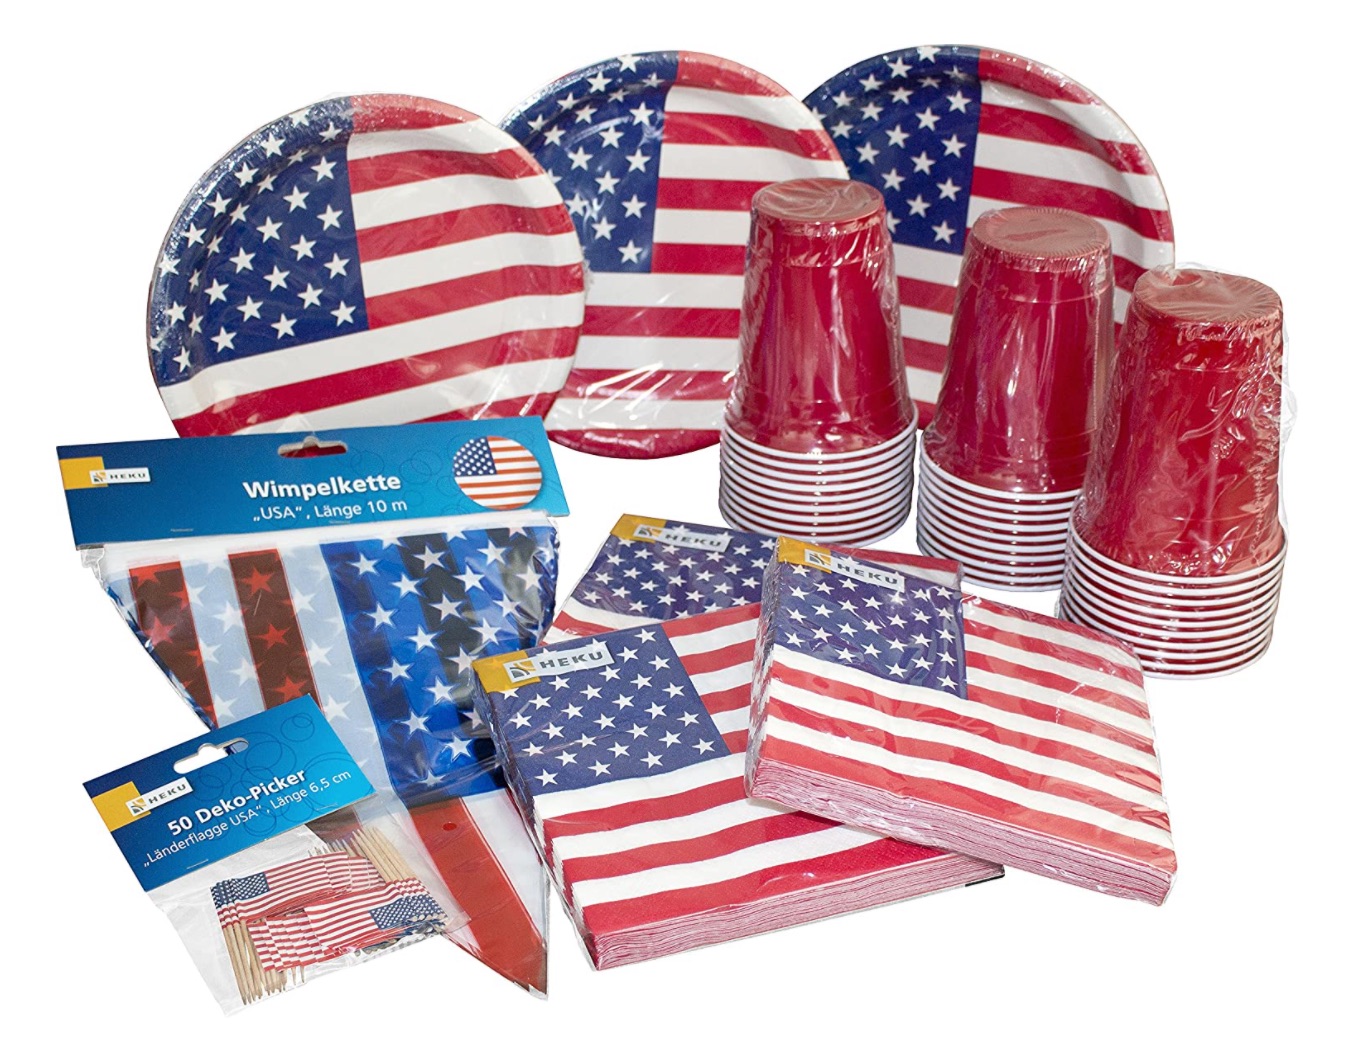 
                                    
                                Festa a tema Usa: dal barbecue al kit accessori, le idee per il 4 luglio e i party ispirati all'America